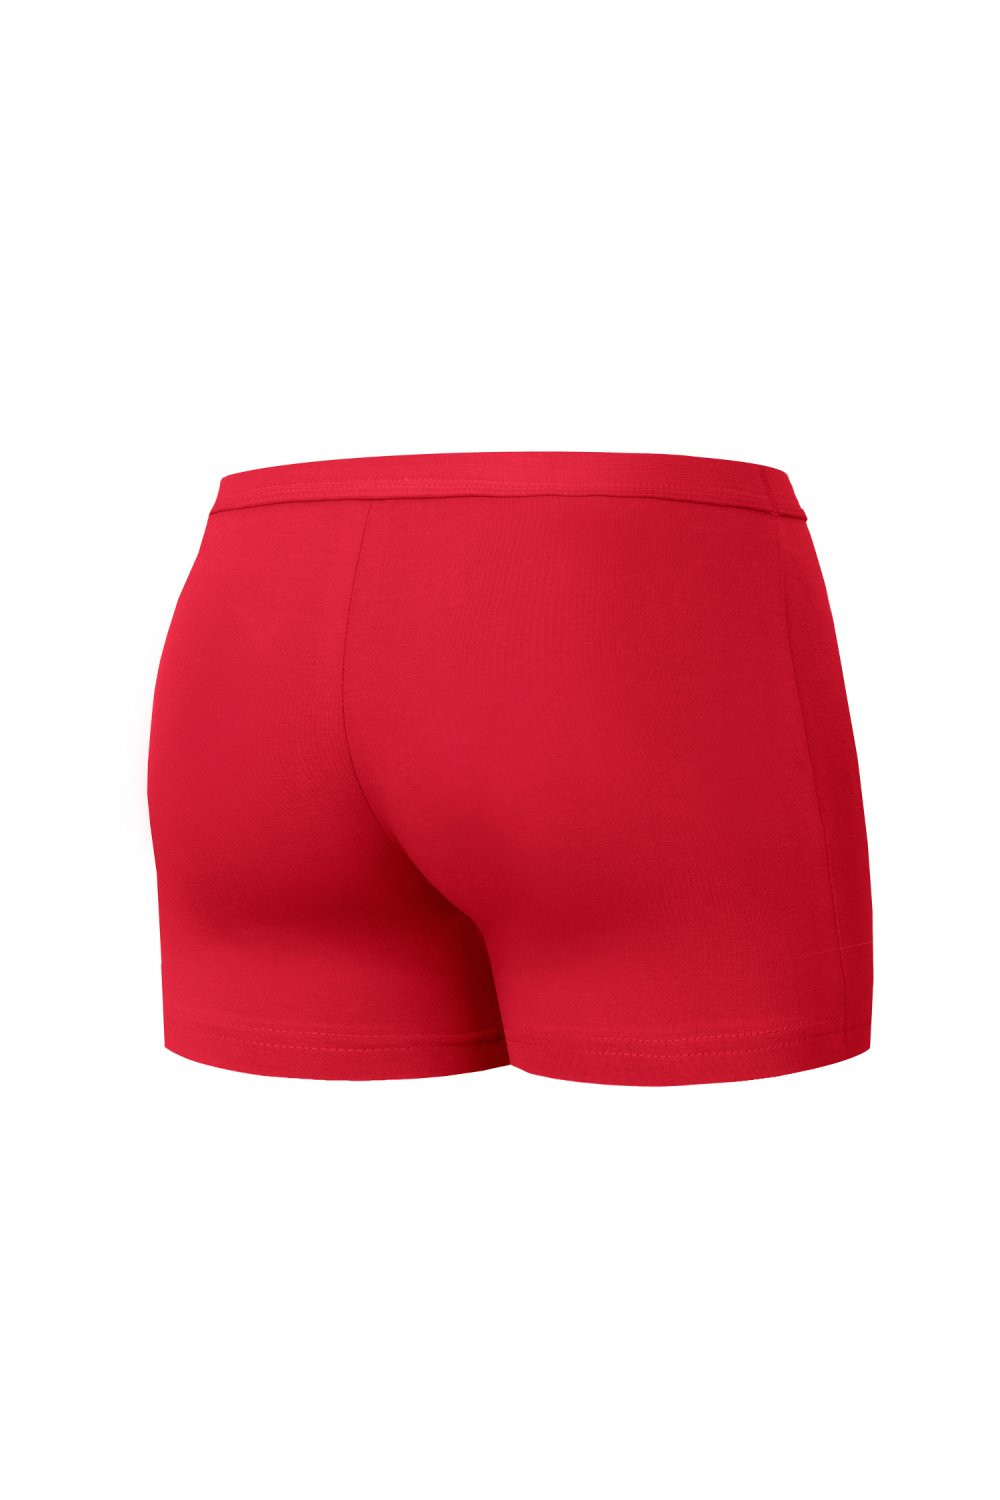 Pánské boxerky 223 Authentic mini red - CORNETTE Barva: Červená, Velikost: M